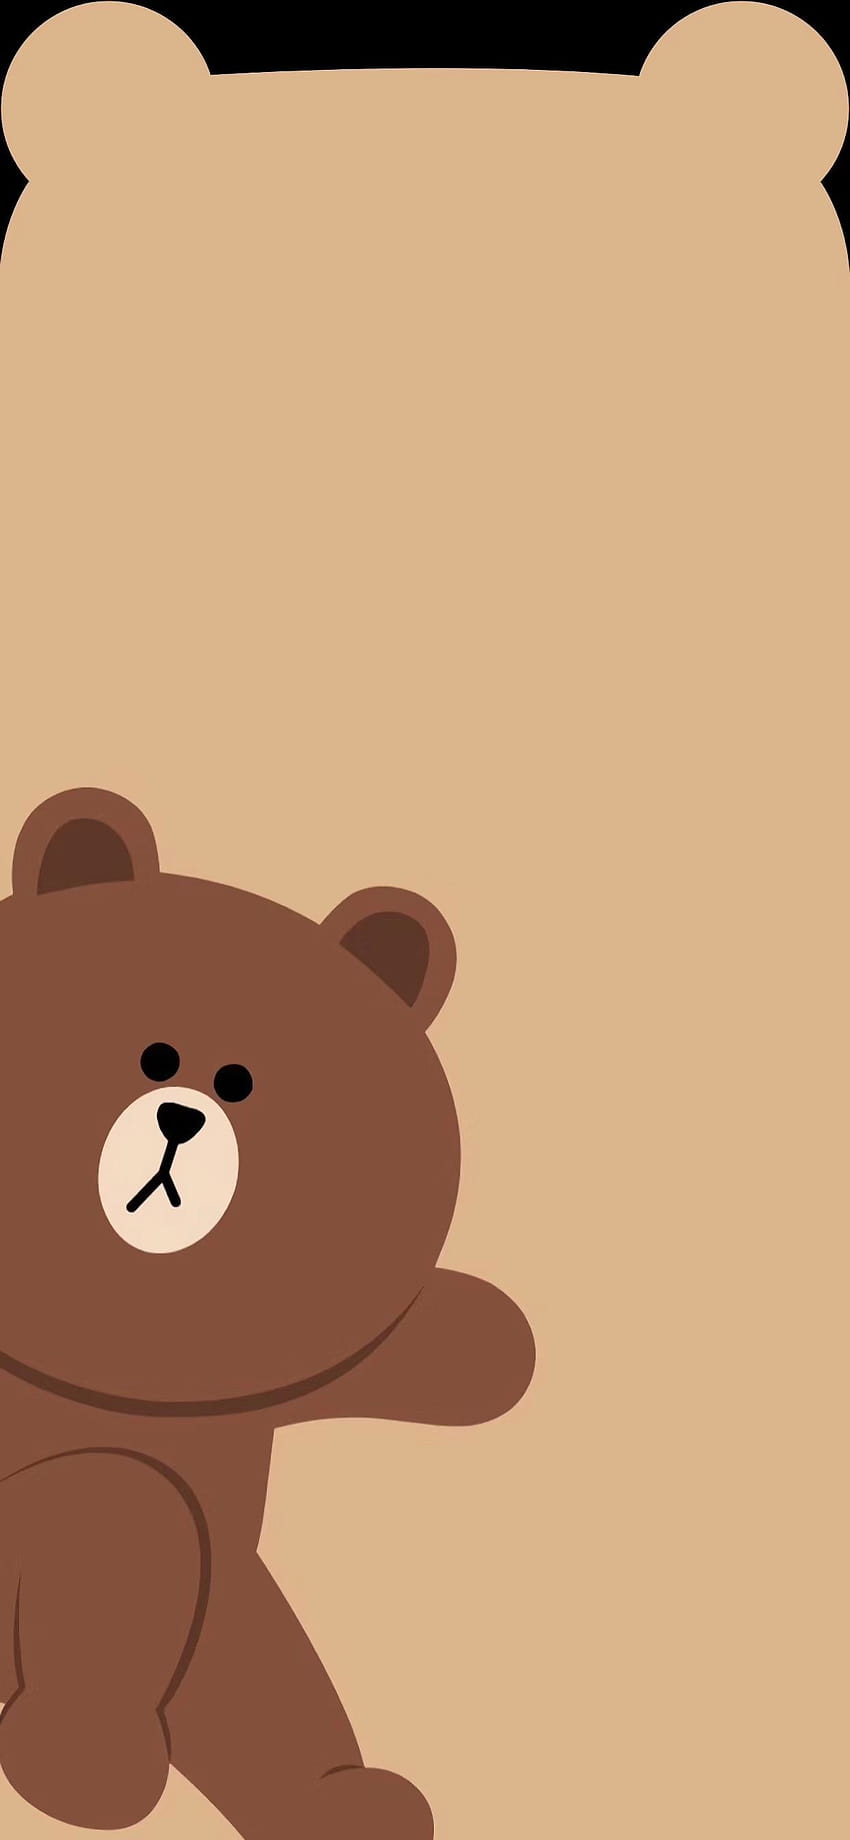 beruang,urso de pelúcia,urso,marrom,urso pardo,desenhos animados,ilustração,clip-art,arte, ursinho de pelúcia dos desenhos animados. Papel de parede de celular HD